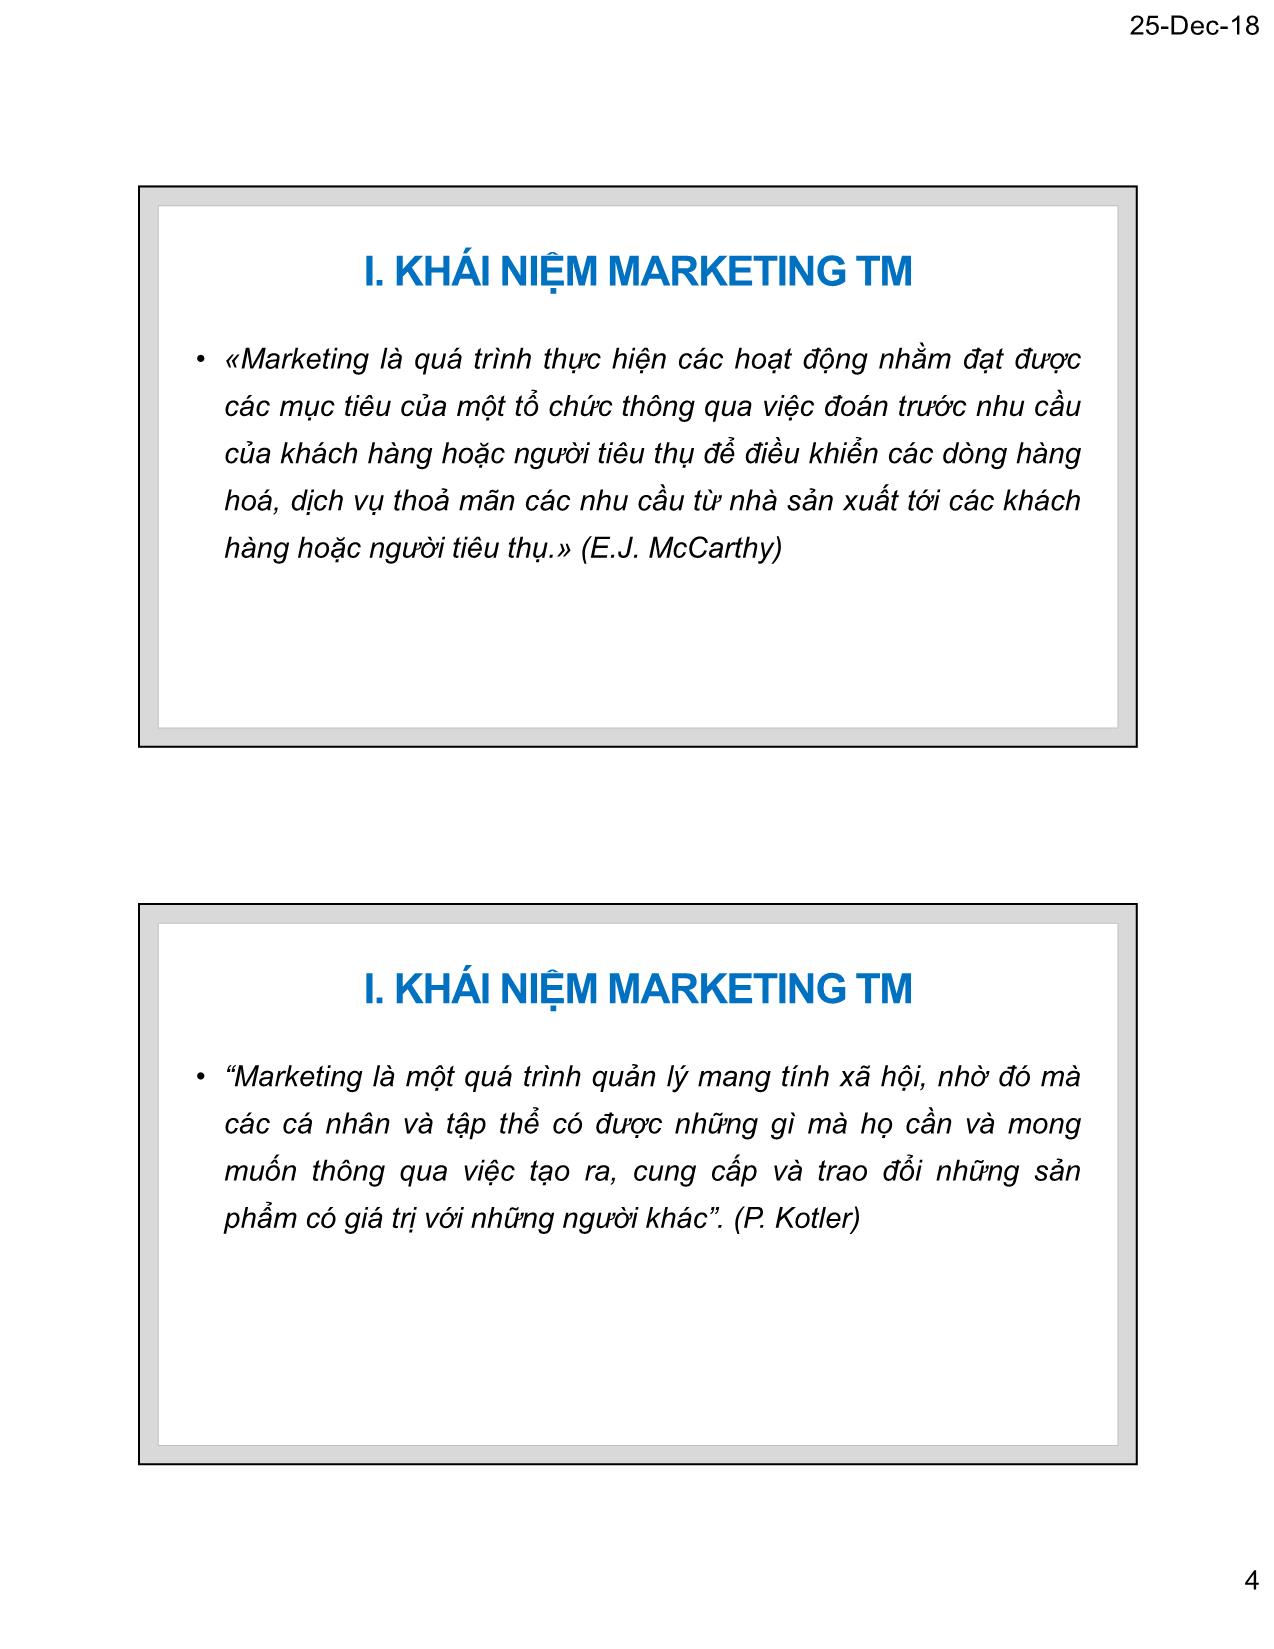 Bài giảng Marketing thương mại - Chương 1: Tư tưởng cơ bản của Marketing thương mại - Nguyễn Tường Huy trang 4